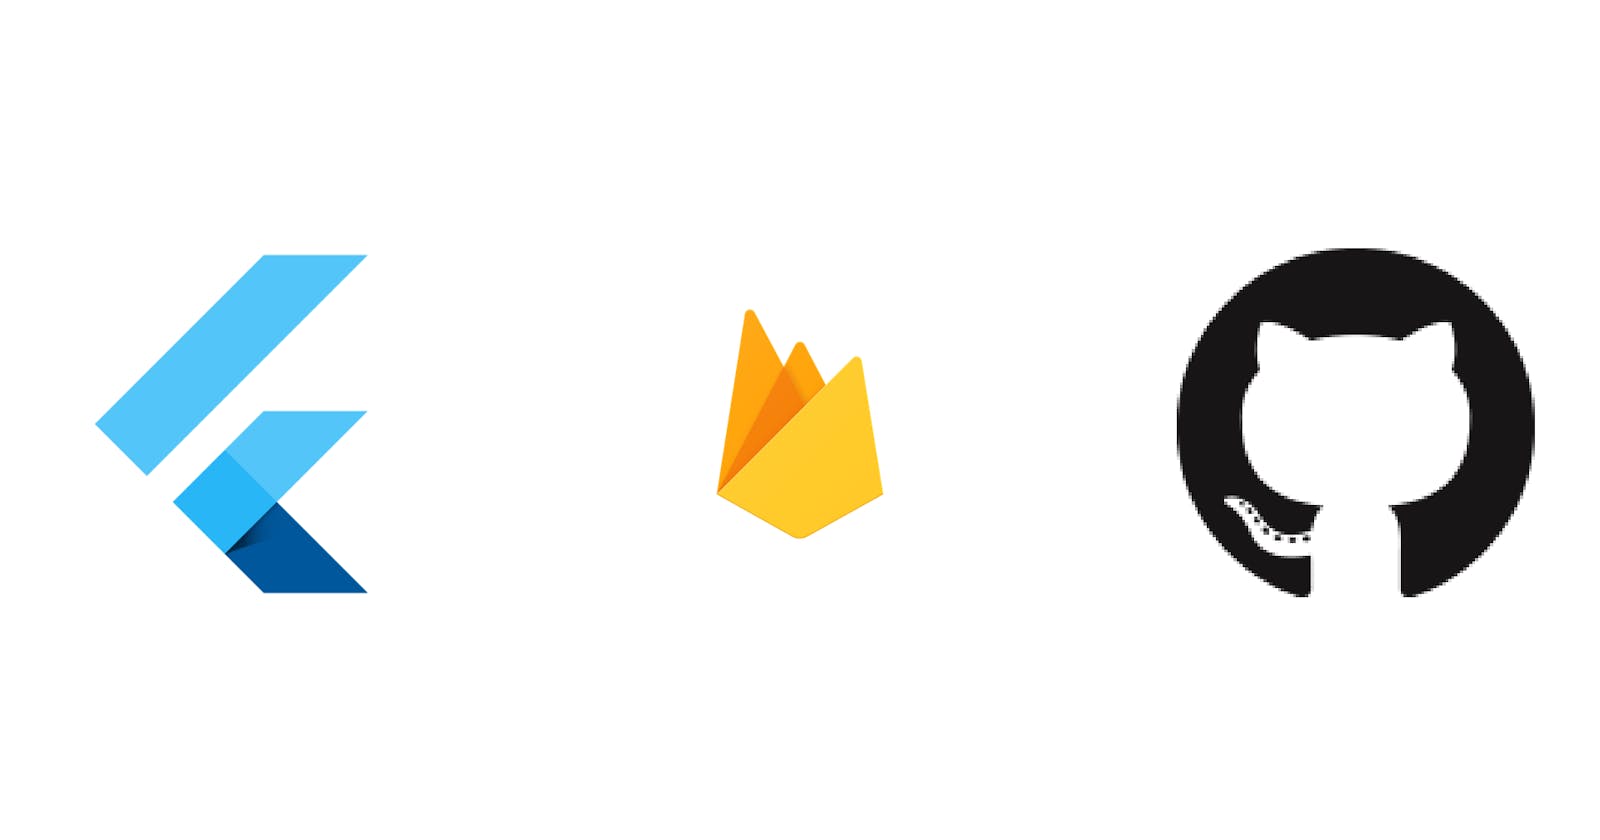 Flutter: Firebase GitHub Authentication